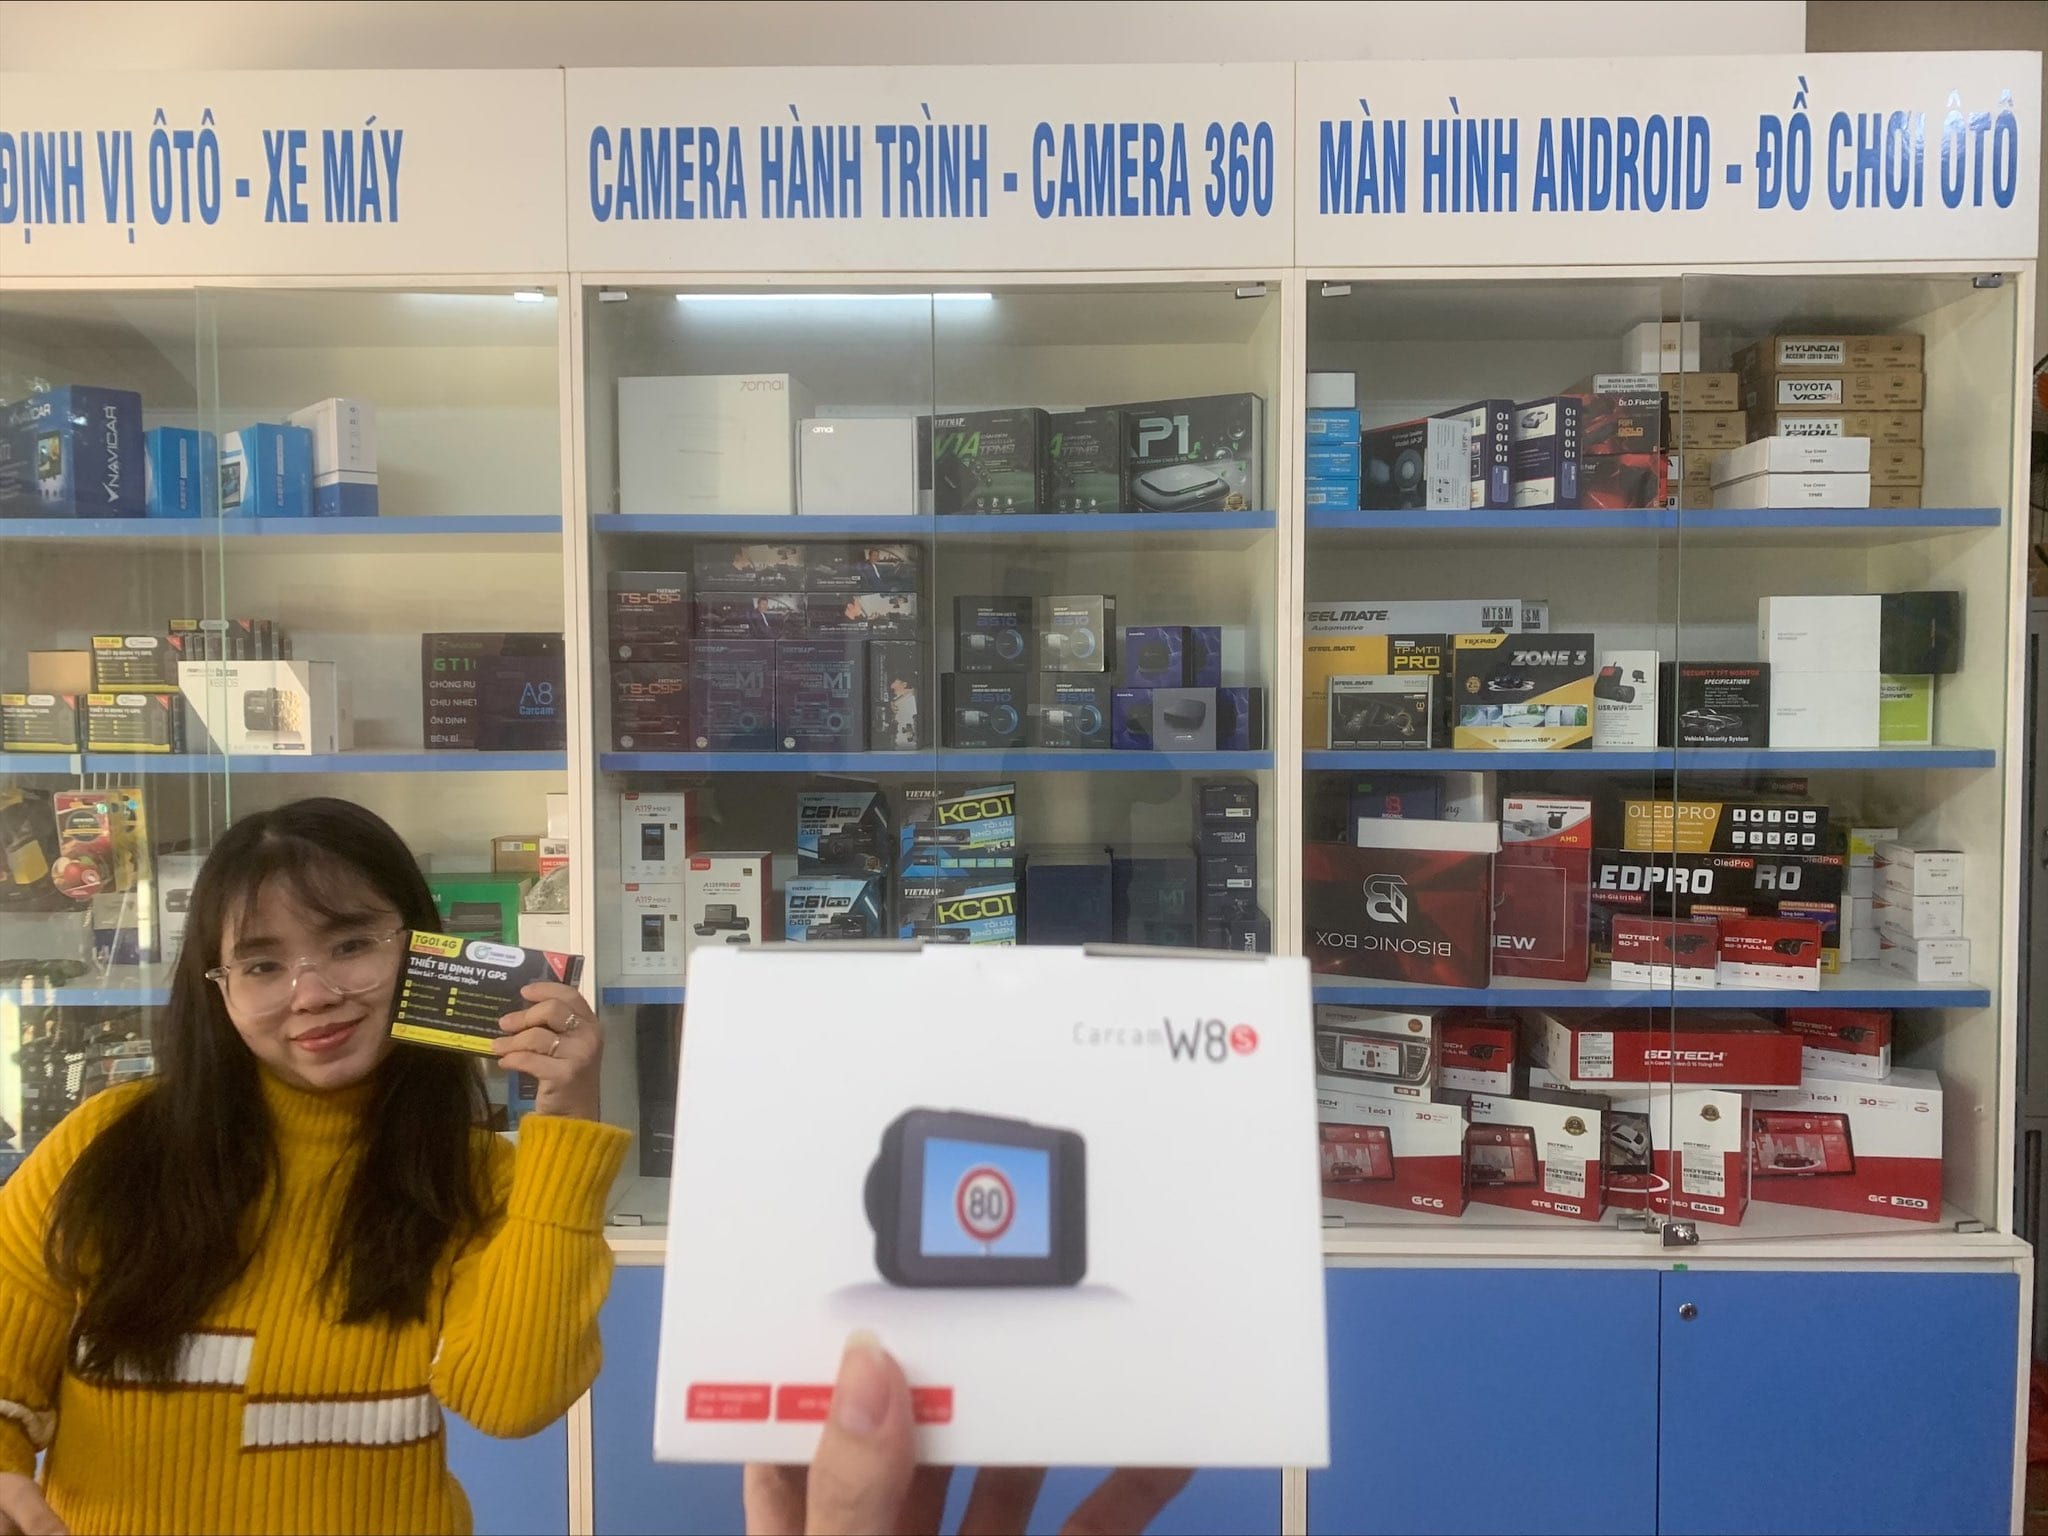 Camera hành trình W8S cung cấp bởi Thành Nam